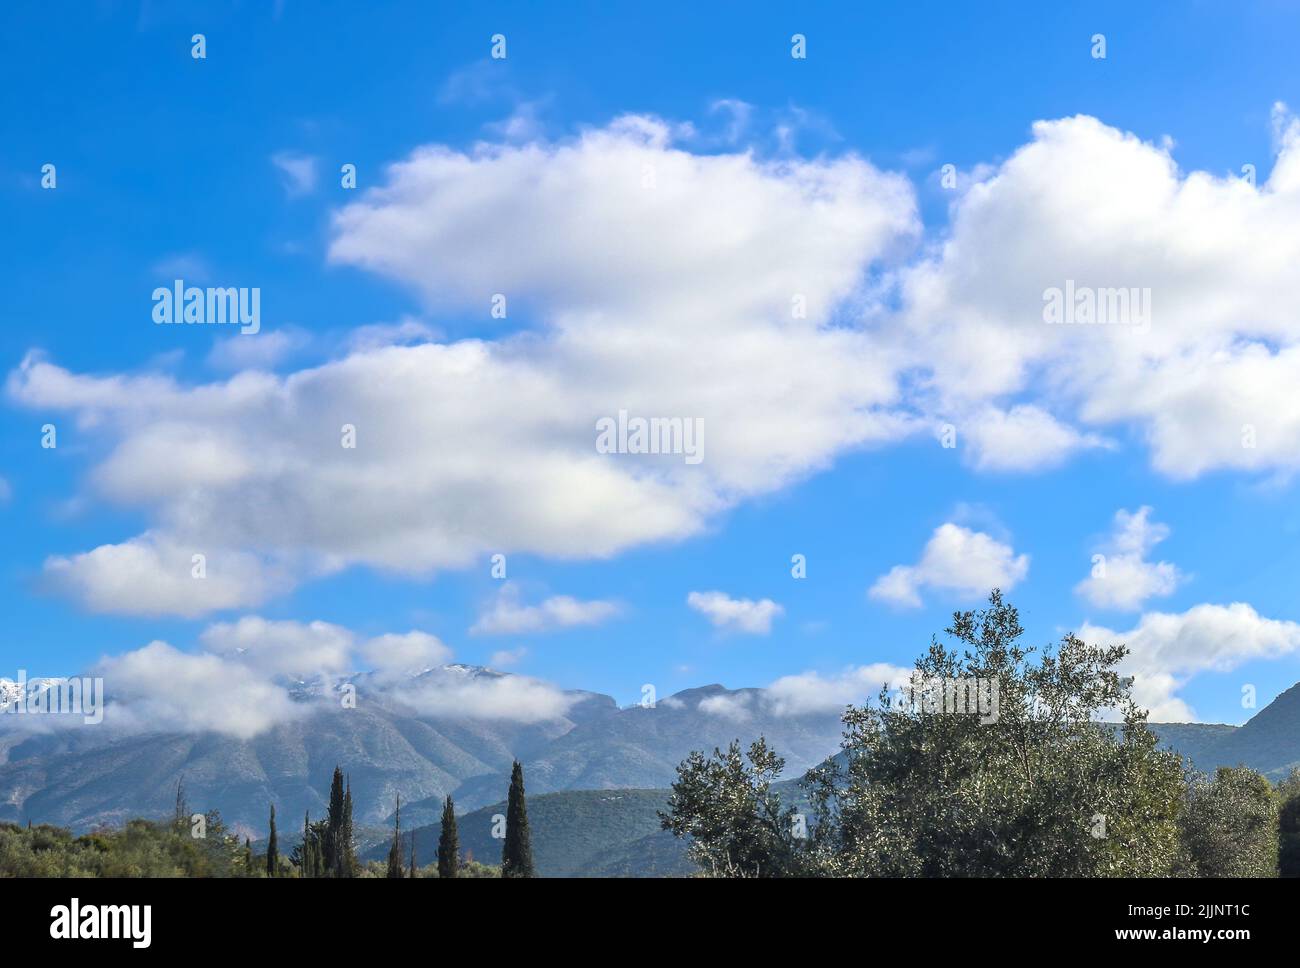 Monti greci del Peloponneso con neve e nubi cime coperte in lontananza sotto il cielo nuvoloso blu con olivi e cipressi in primo piano - s Foto Stock